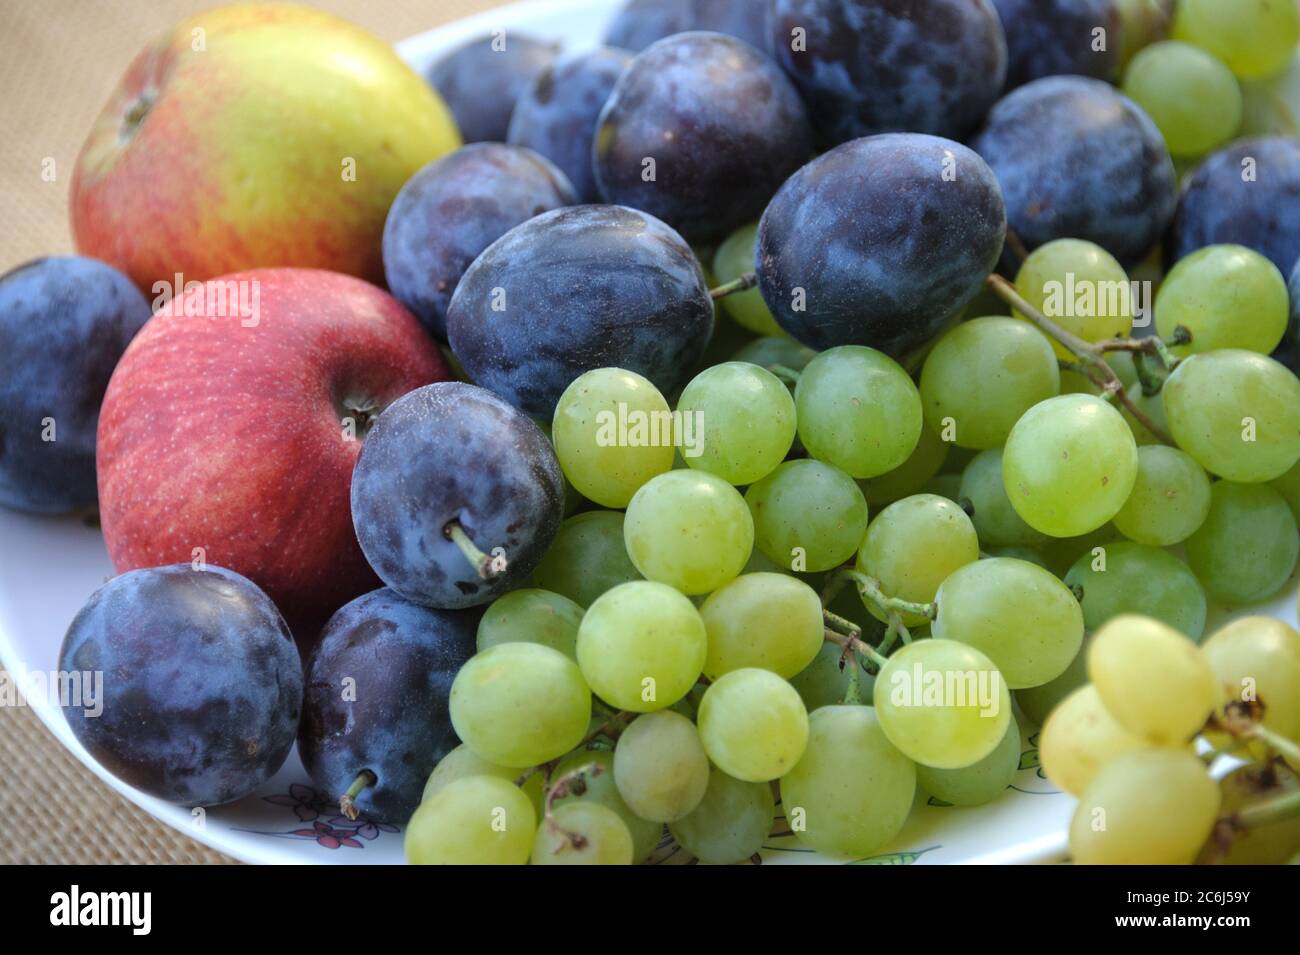 Hauszwetzsche Prunus domestica, Apfel Malus domestica, Tafeltraube Vitis vinifera, Hauszwetzsche Prunus domestica, apple Malus domestica, table grape Stock Photo